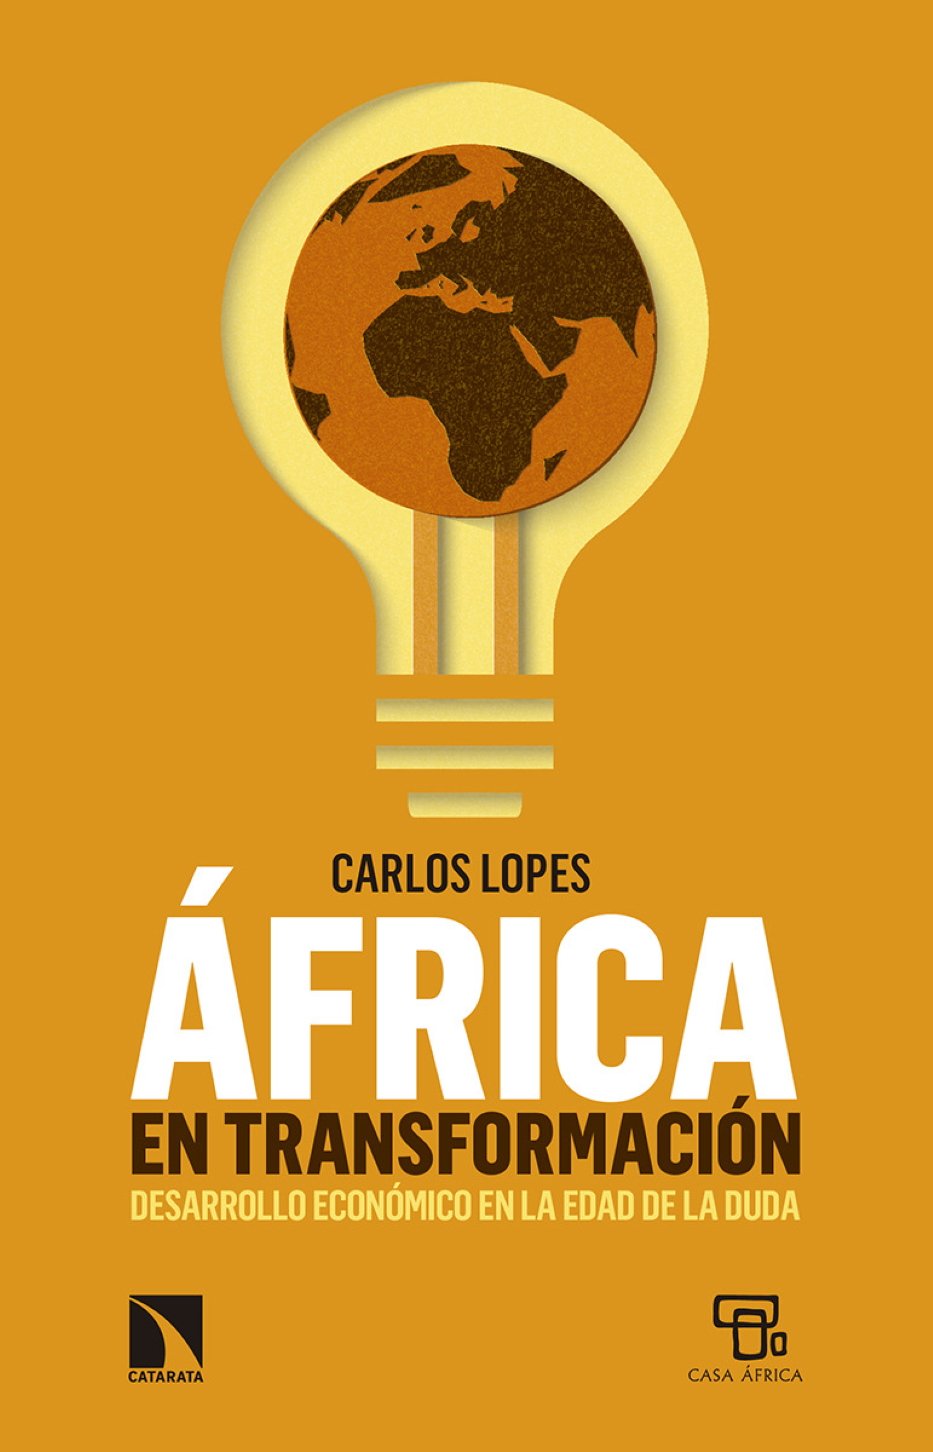 Carlos Lopes, 'África en transformación'. Los Libros de la Catarata, 240 p., 17,50 €.